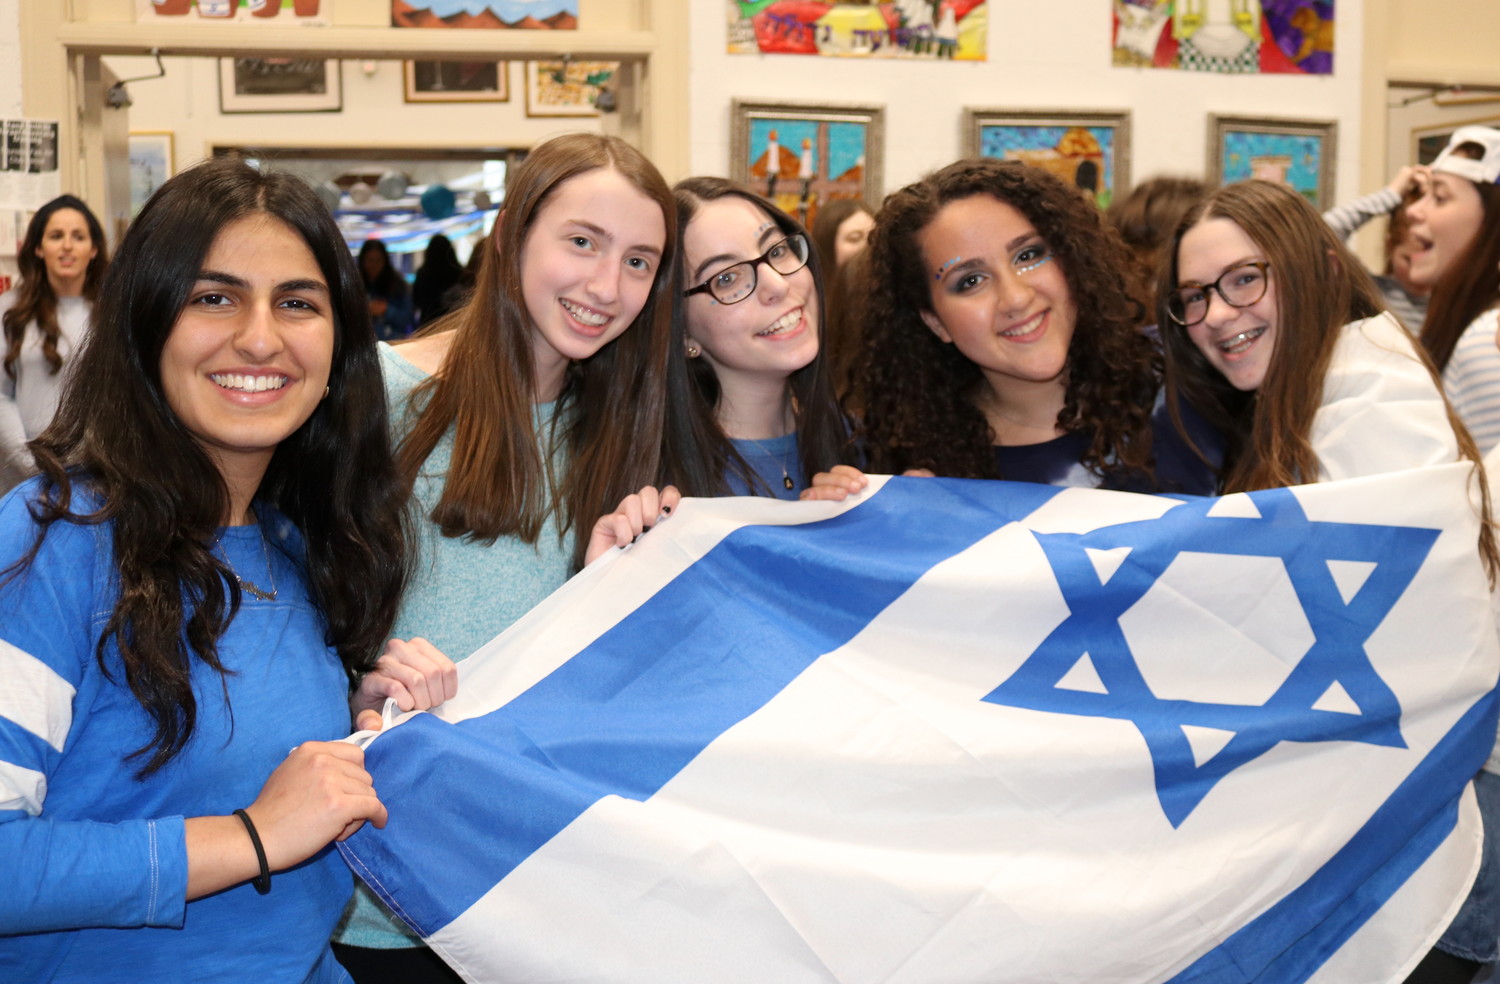 Israel pride at SKA: From left — sophomores Avigail Razi, Emily Haller, Ahava Rosenberg, Tehila Bitton and Shana Motovich.